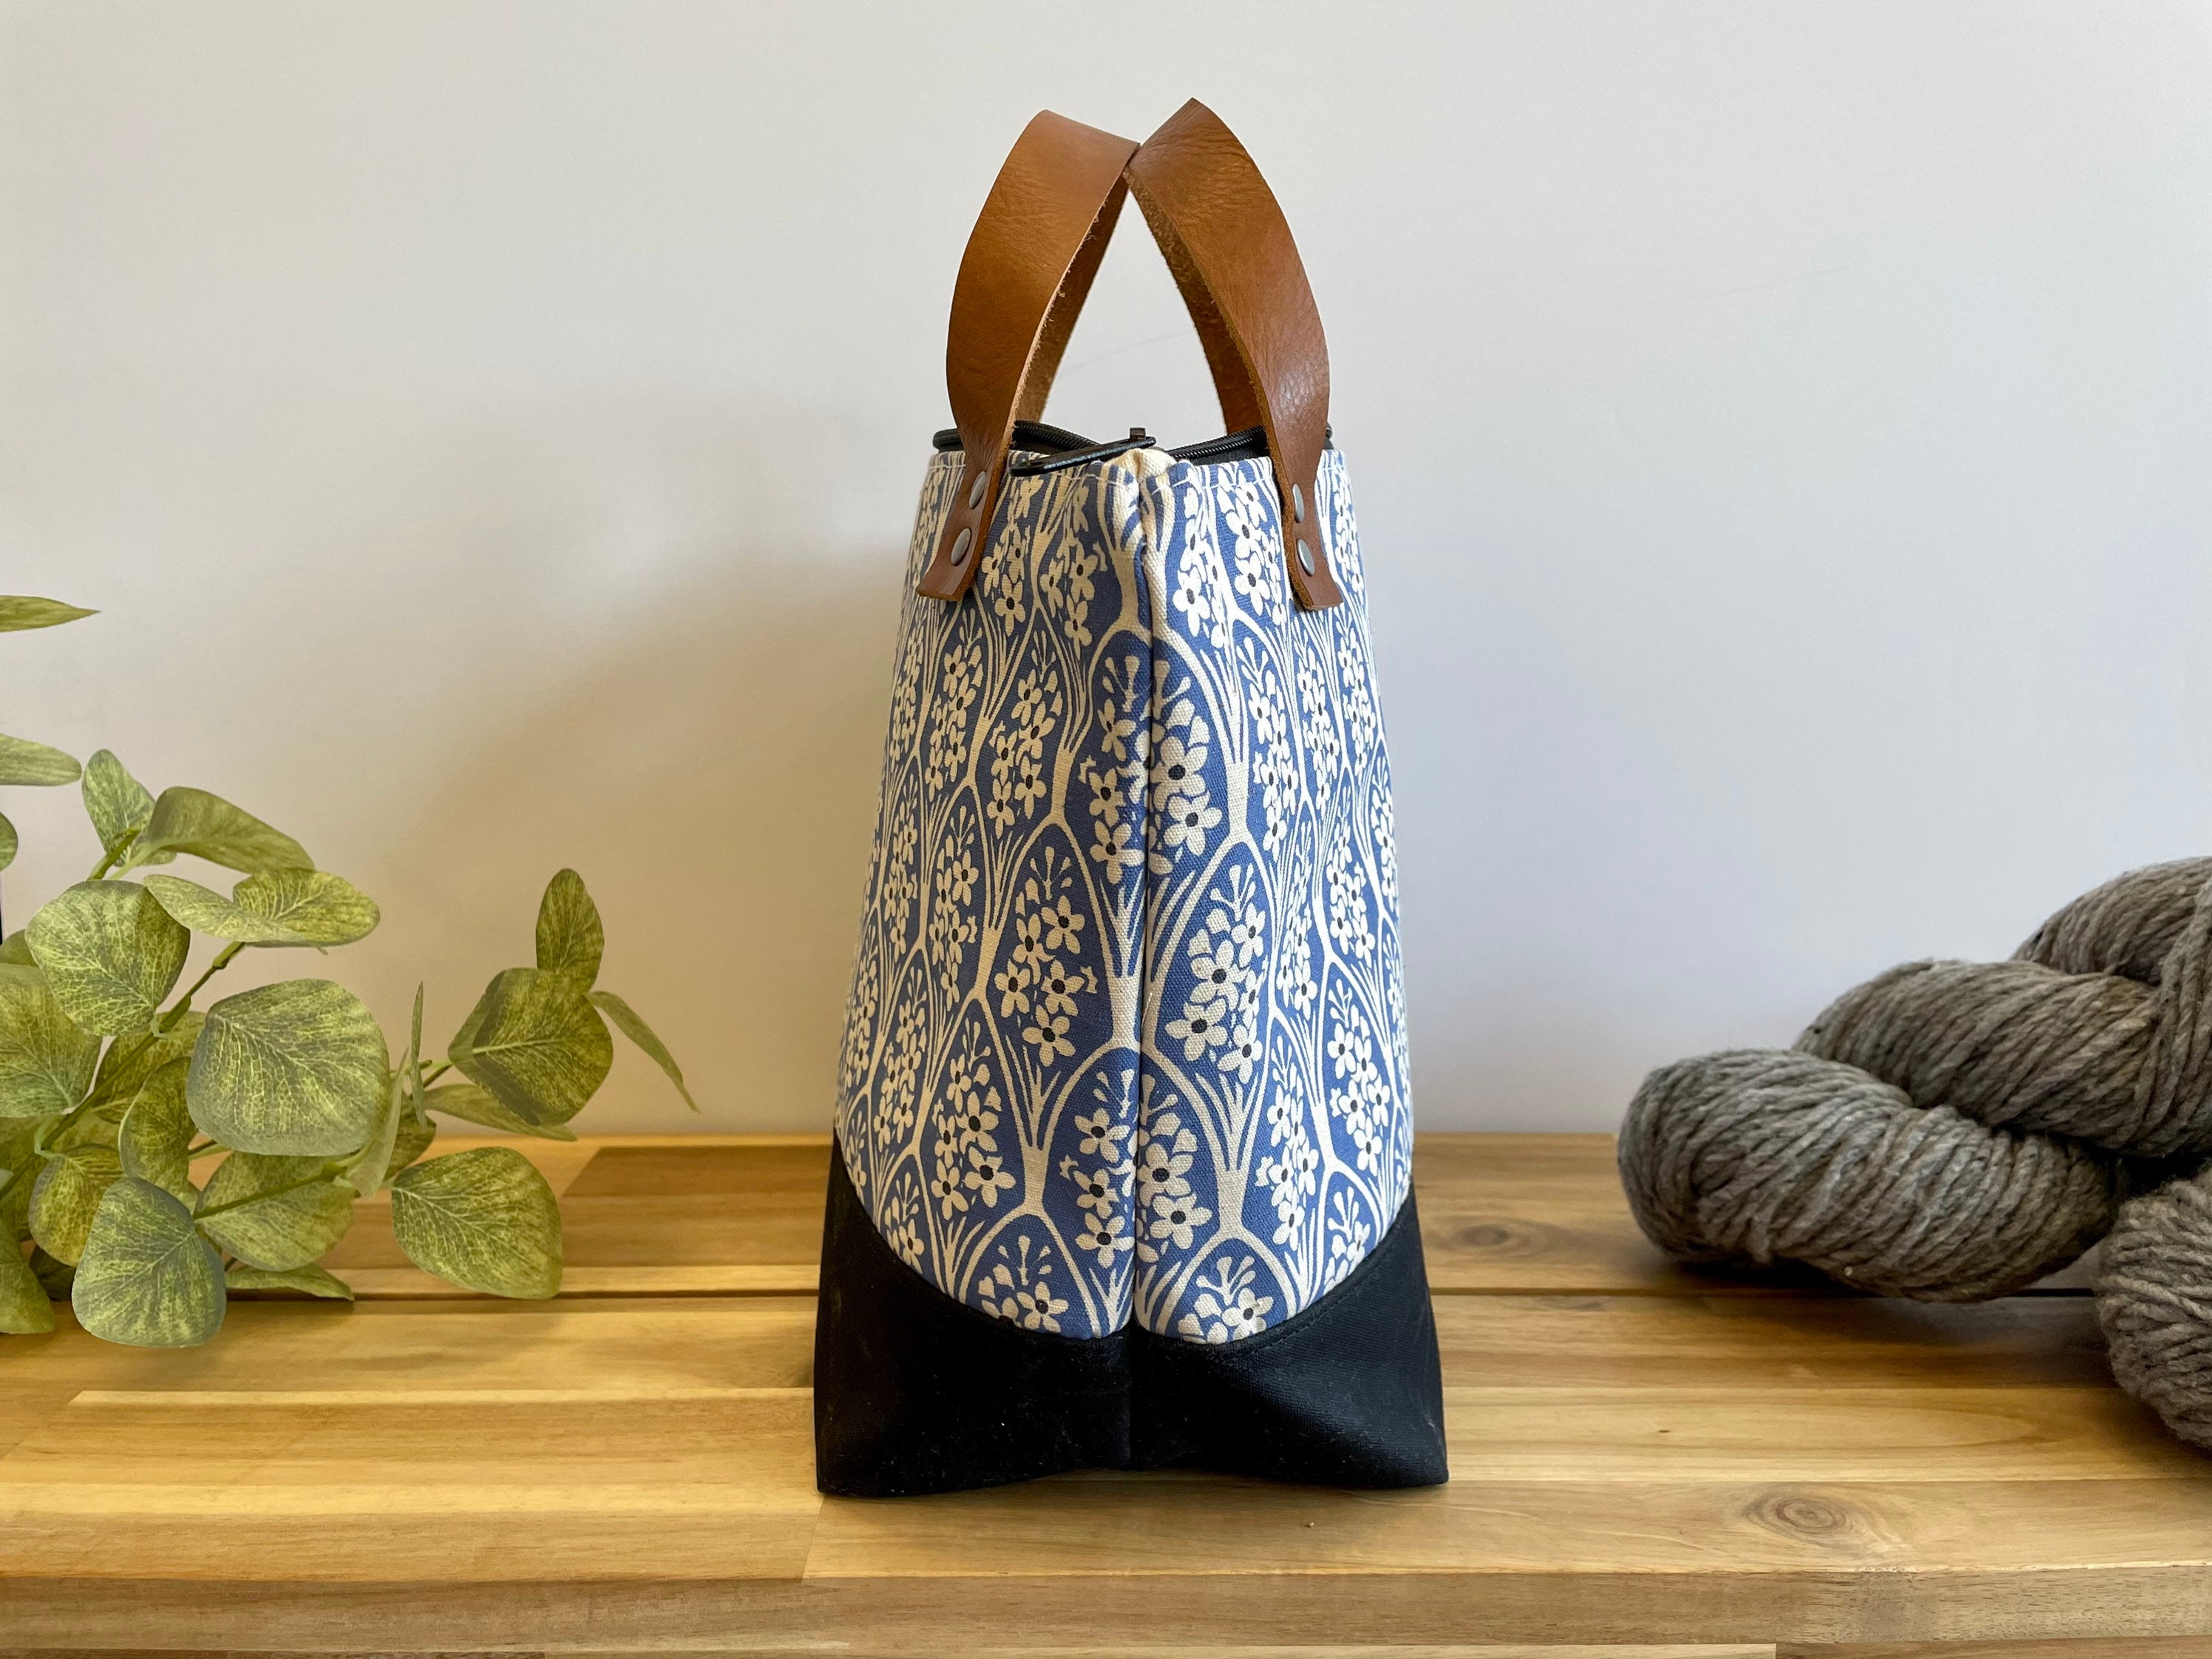 Knitting Project Bag, Bluestone Waxed Canvas and Leather Project Bag, Knitting Bag, Yarn Bag, Crochet Bag, Craft Bag, Drawstring Bag